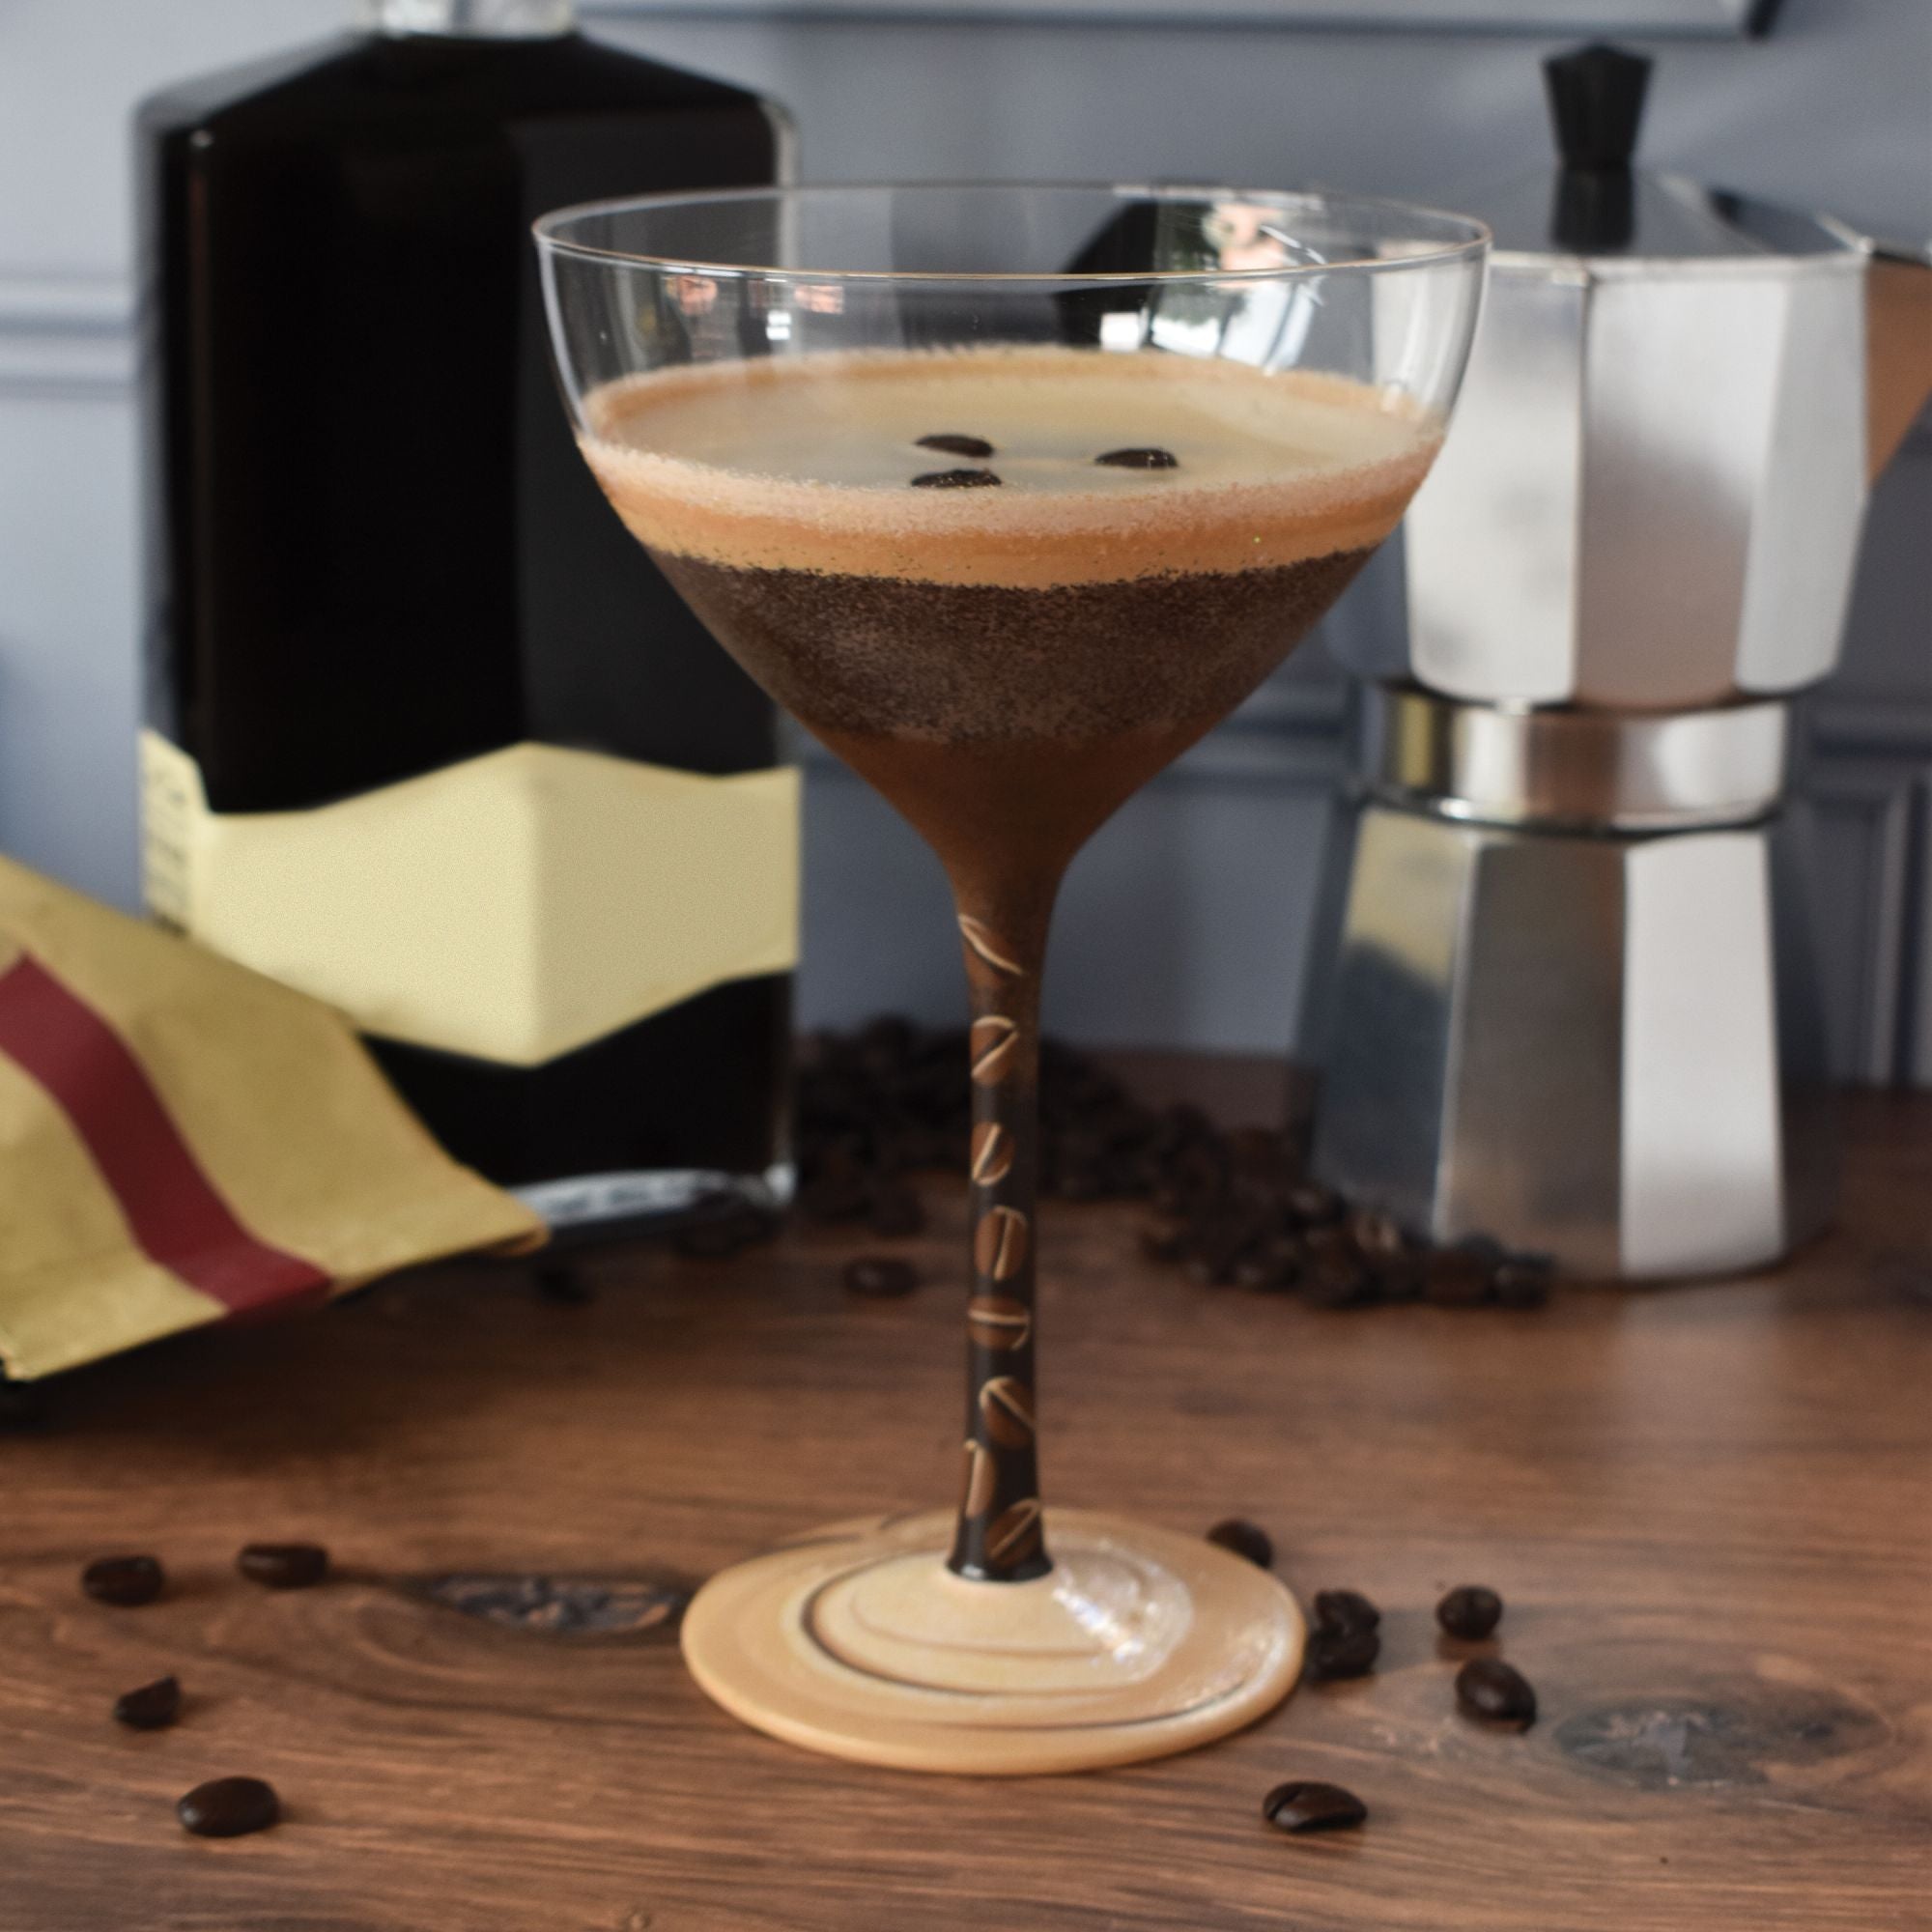 The Espresso Martini Gift Set